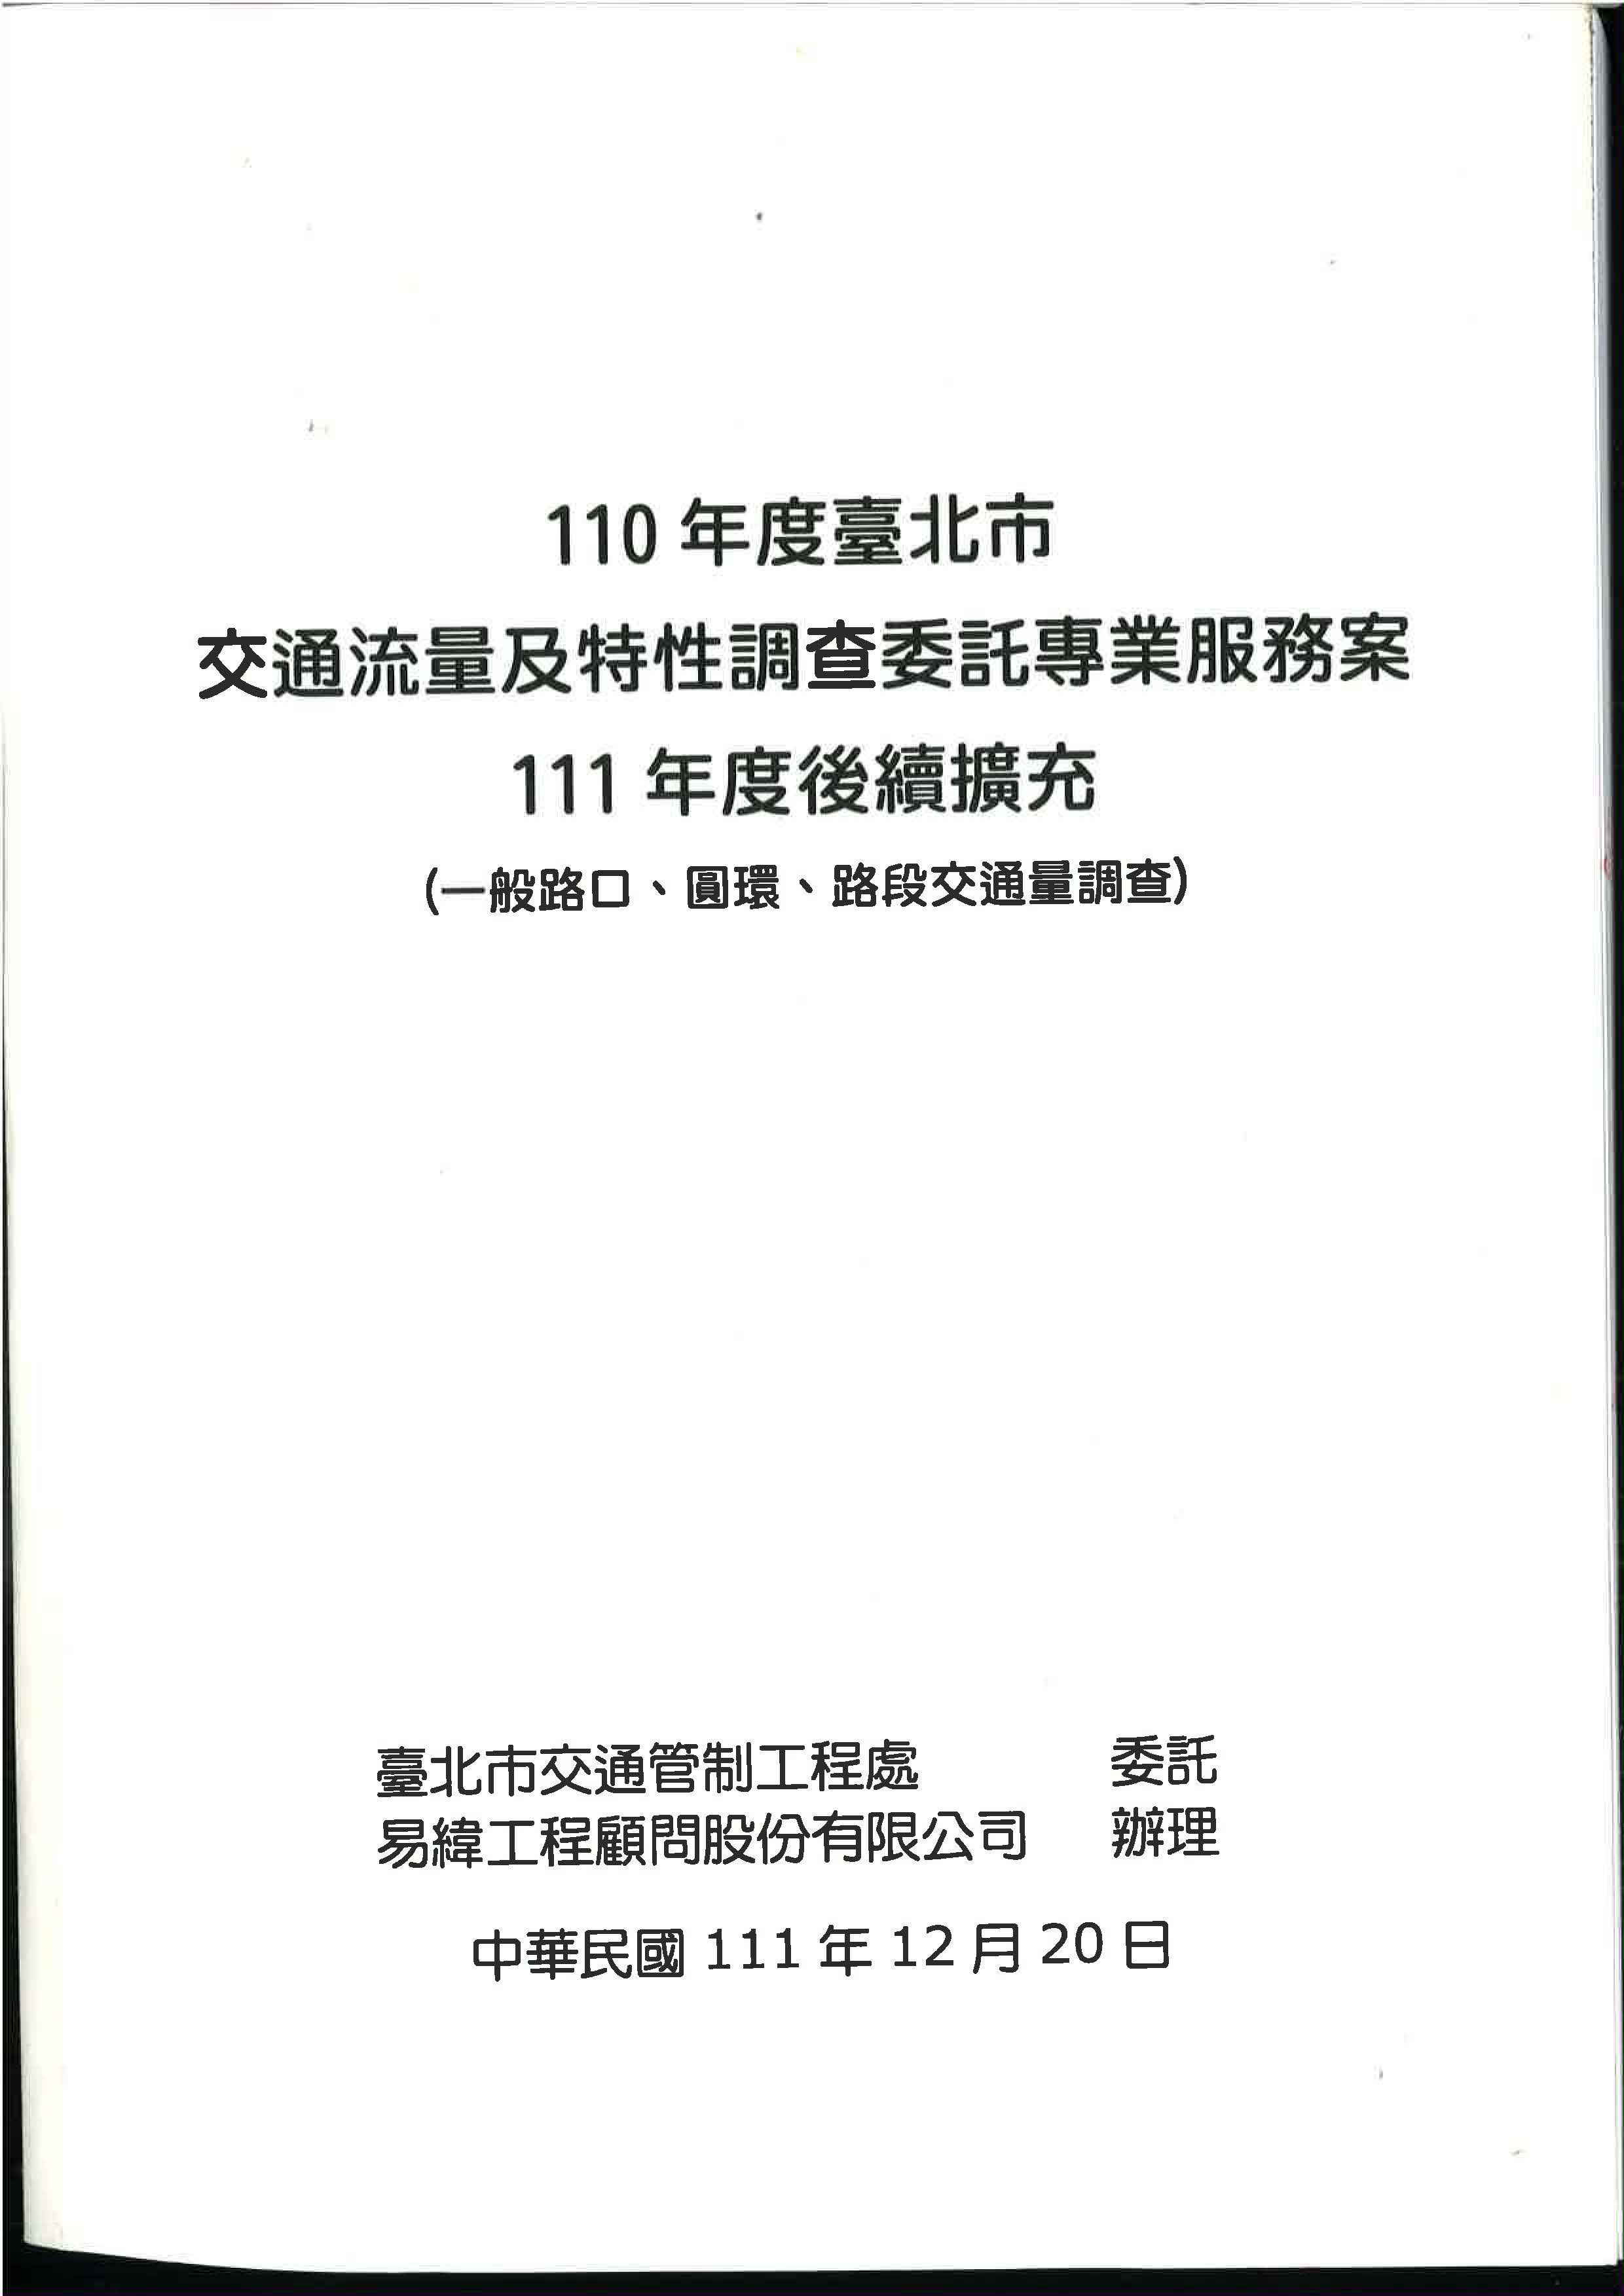 110年度臺北市交通流量及特性調查委託專業服務案-111年度後續擴充(一般路口、圓環、路段交通量調查) 